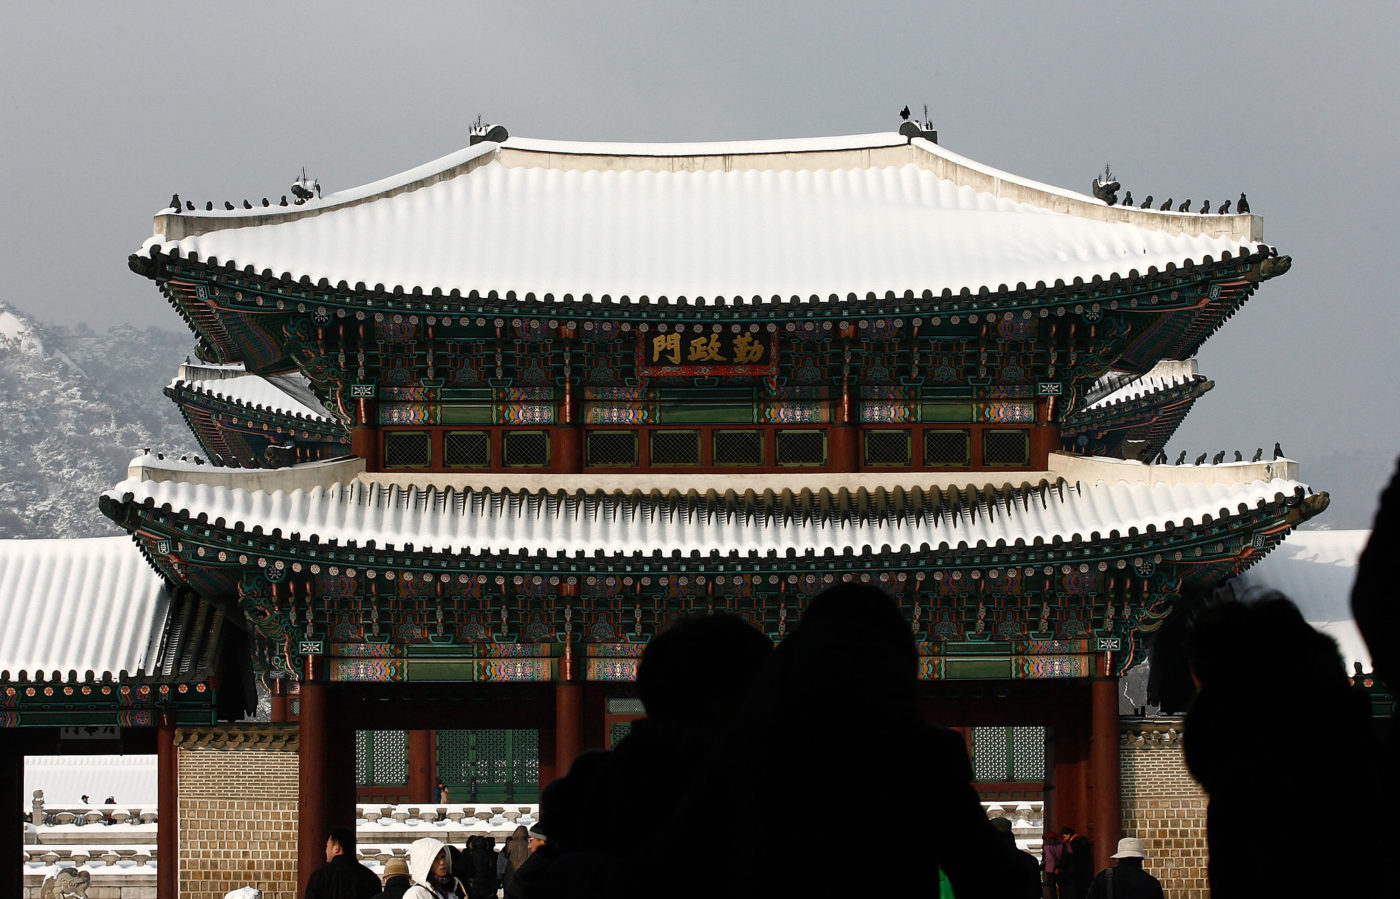 설경이 아름다운 서울 5대 궁궐